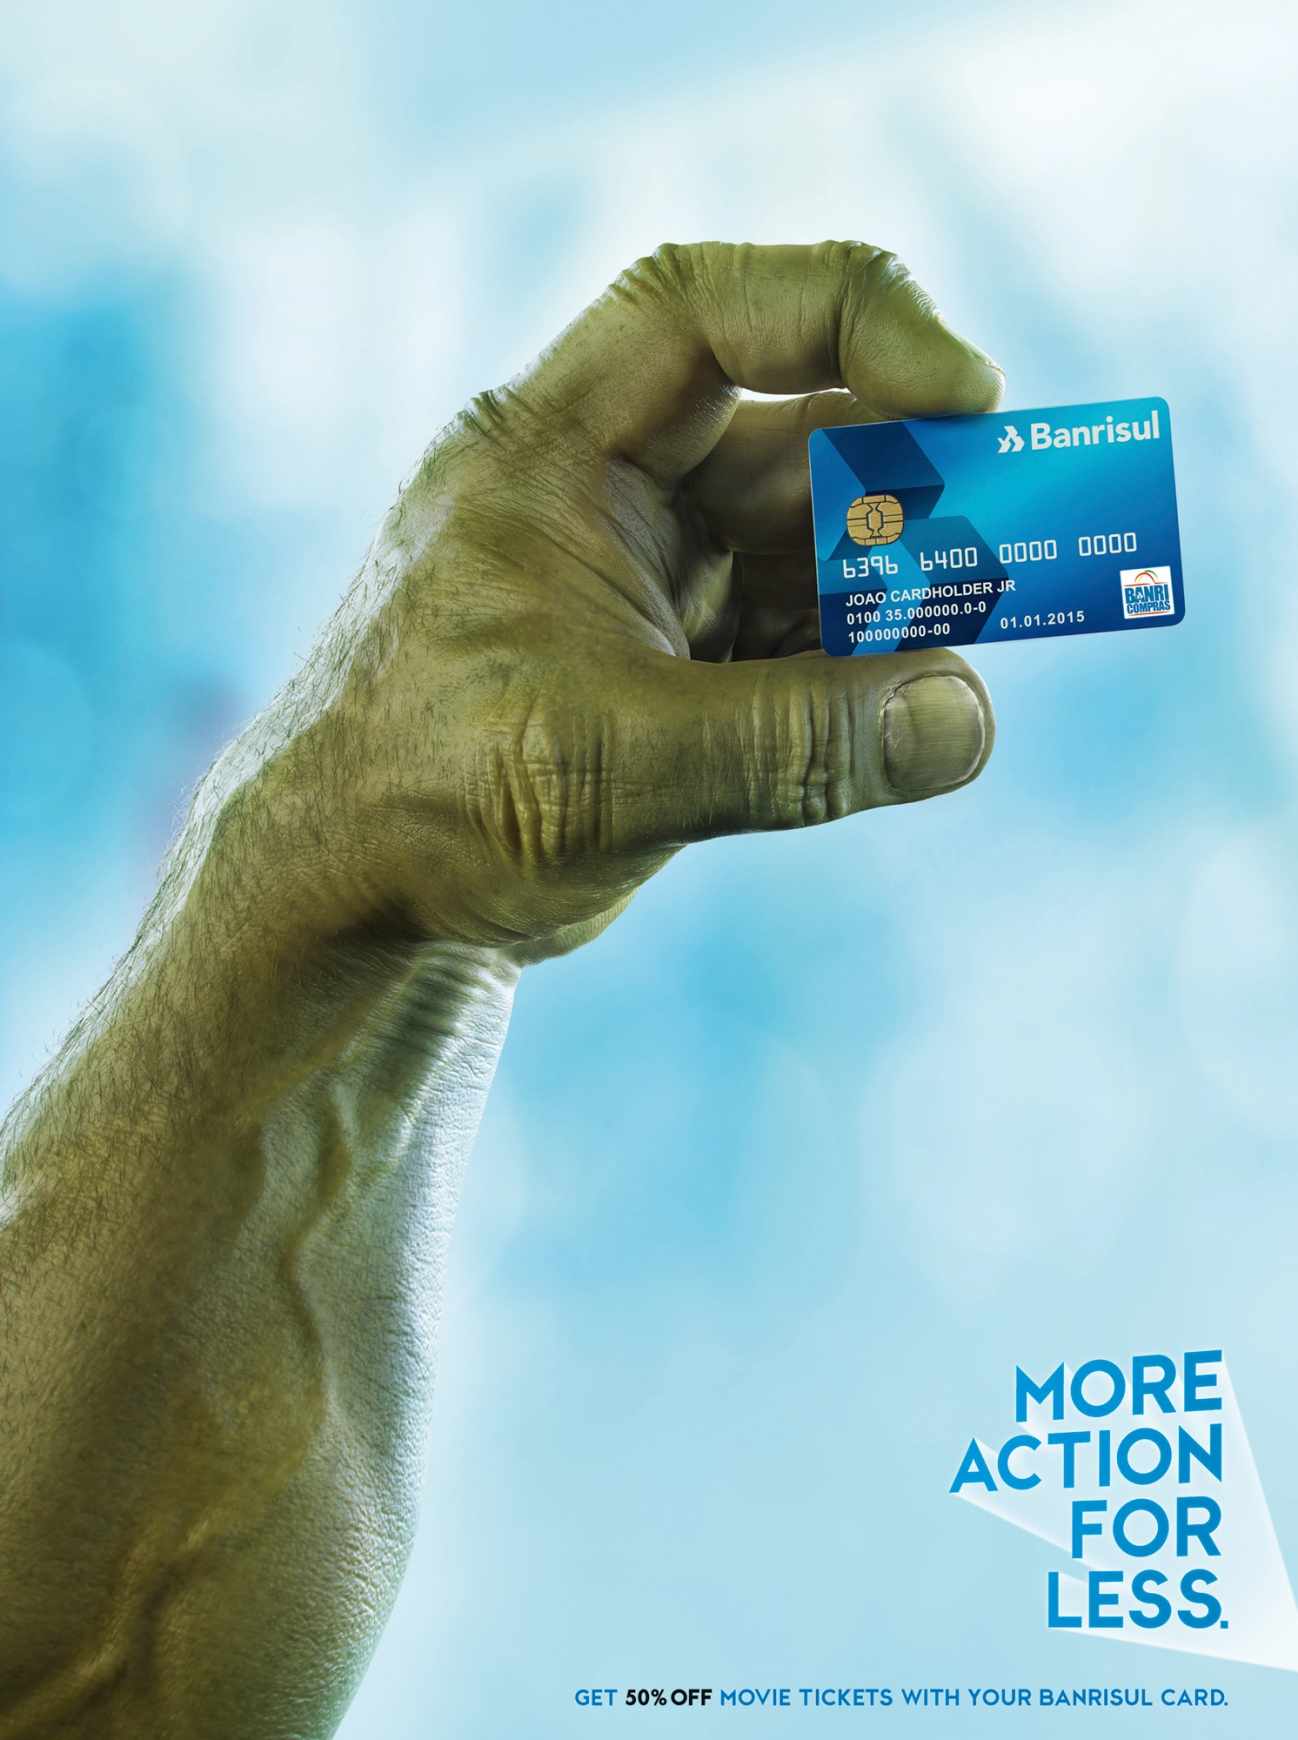 巴西BANRISUL信用卡宣传平面广告设计